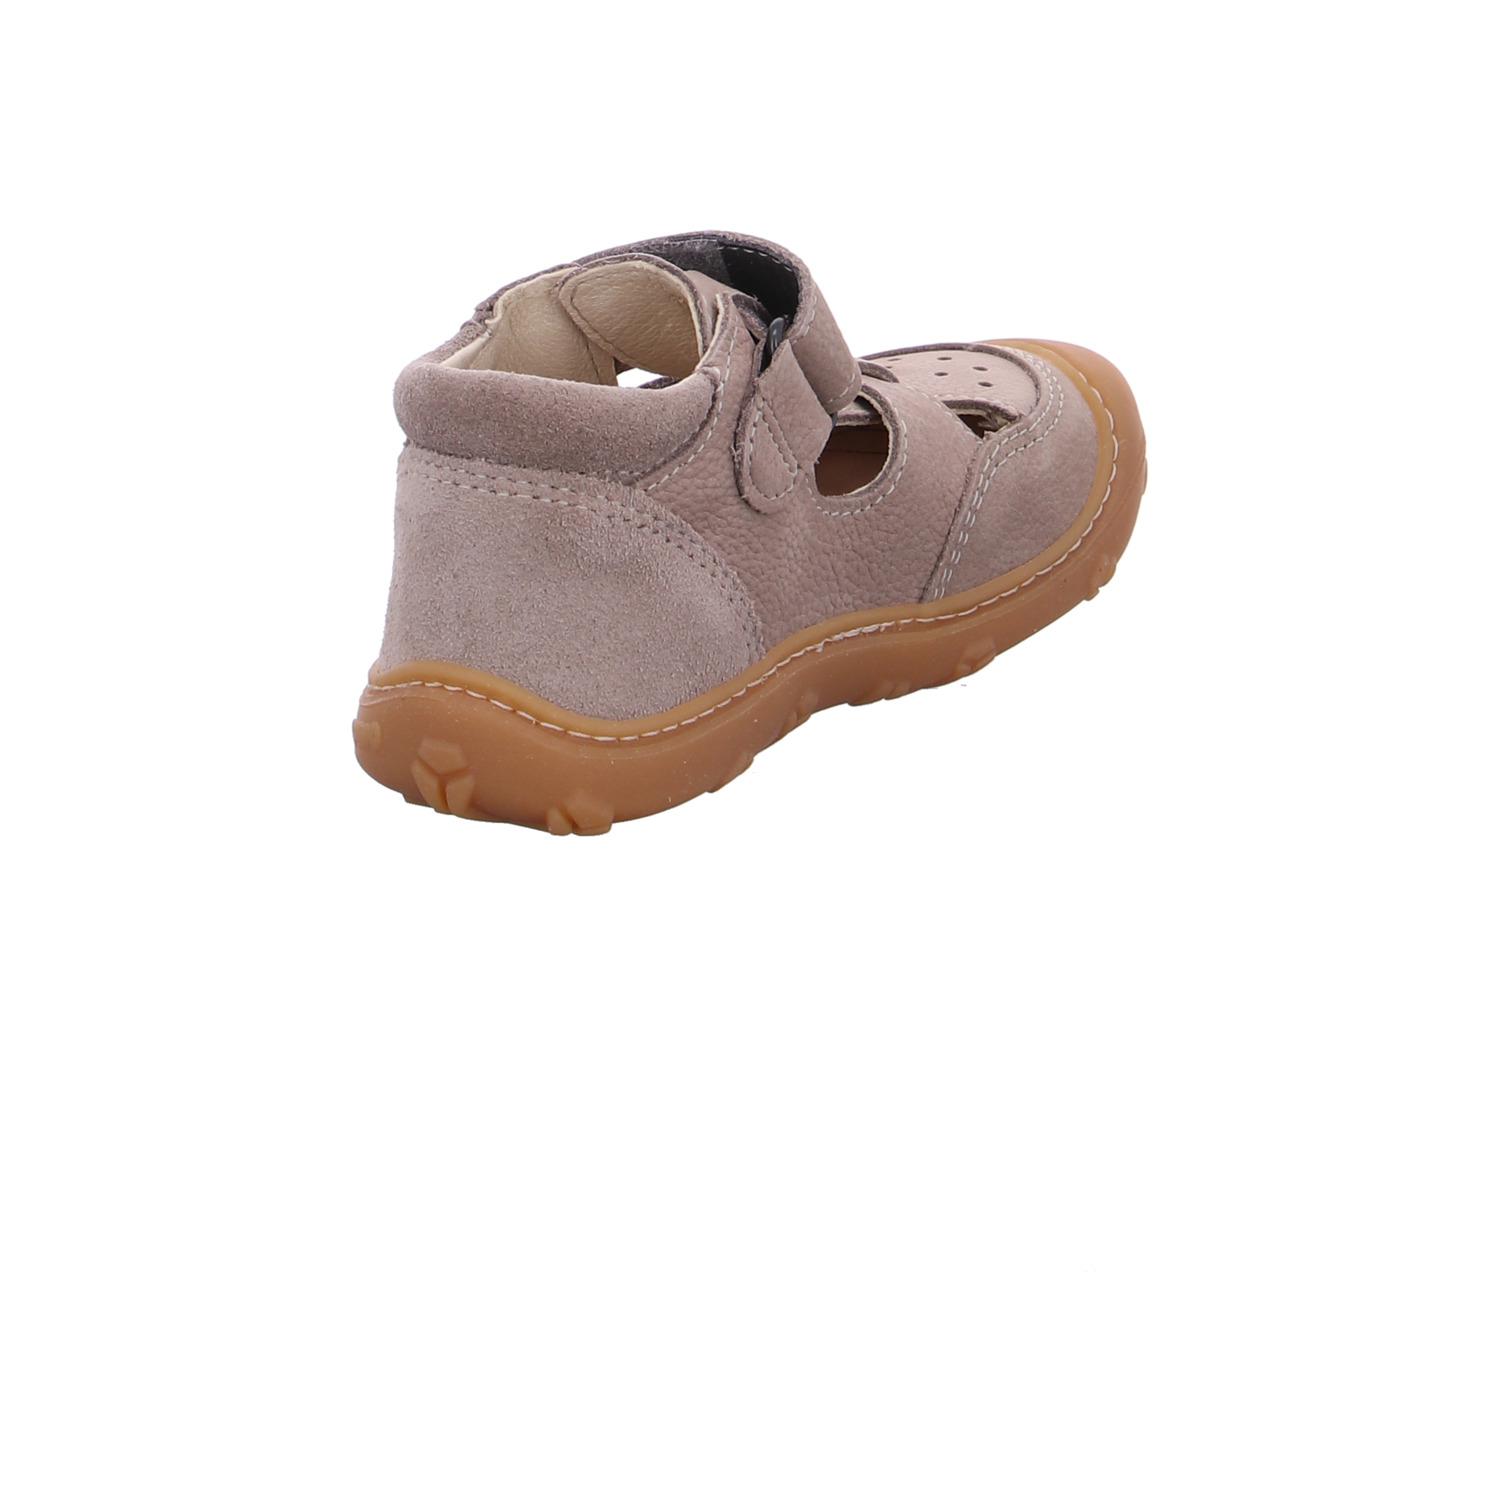 ricosta-kinder-sandaletten-jungen-beige-126067-19